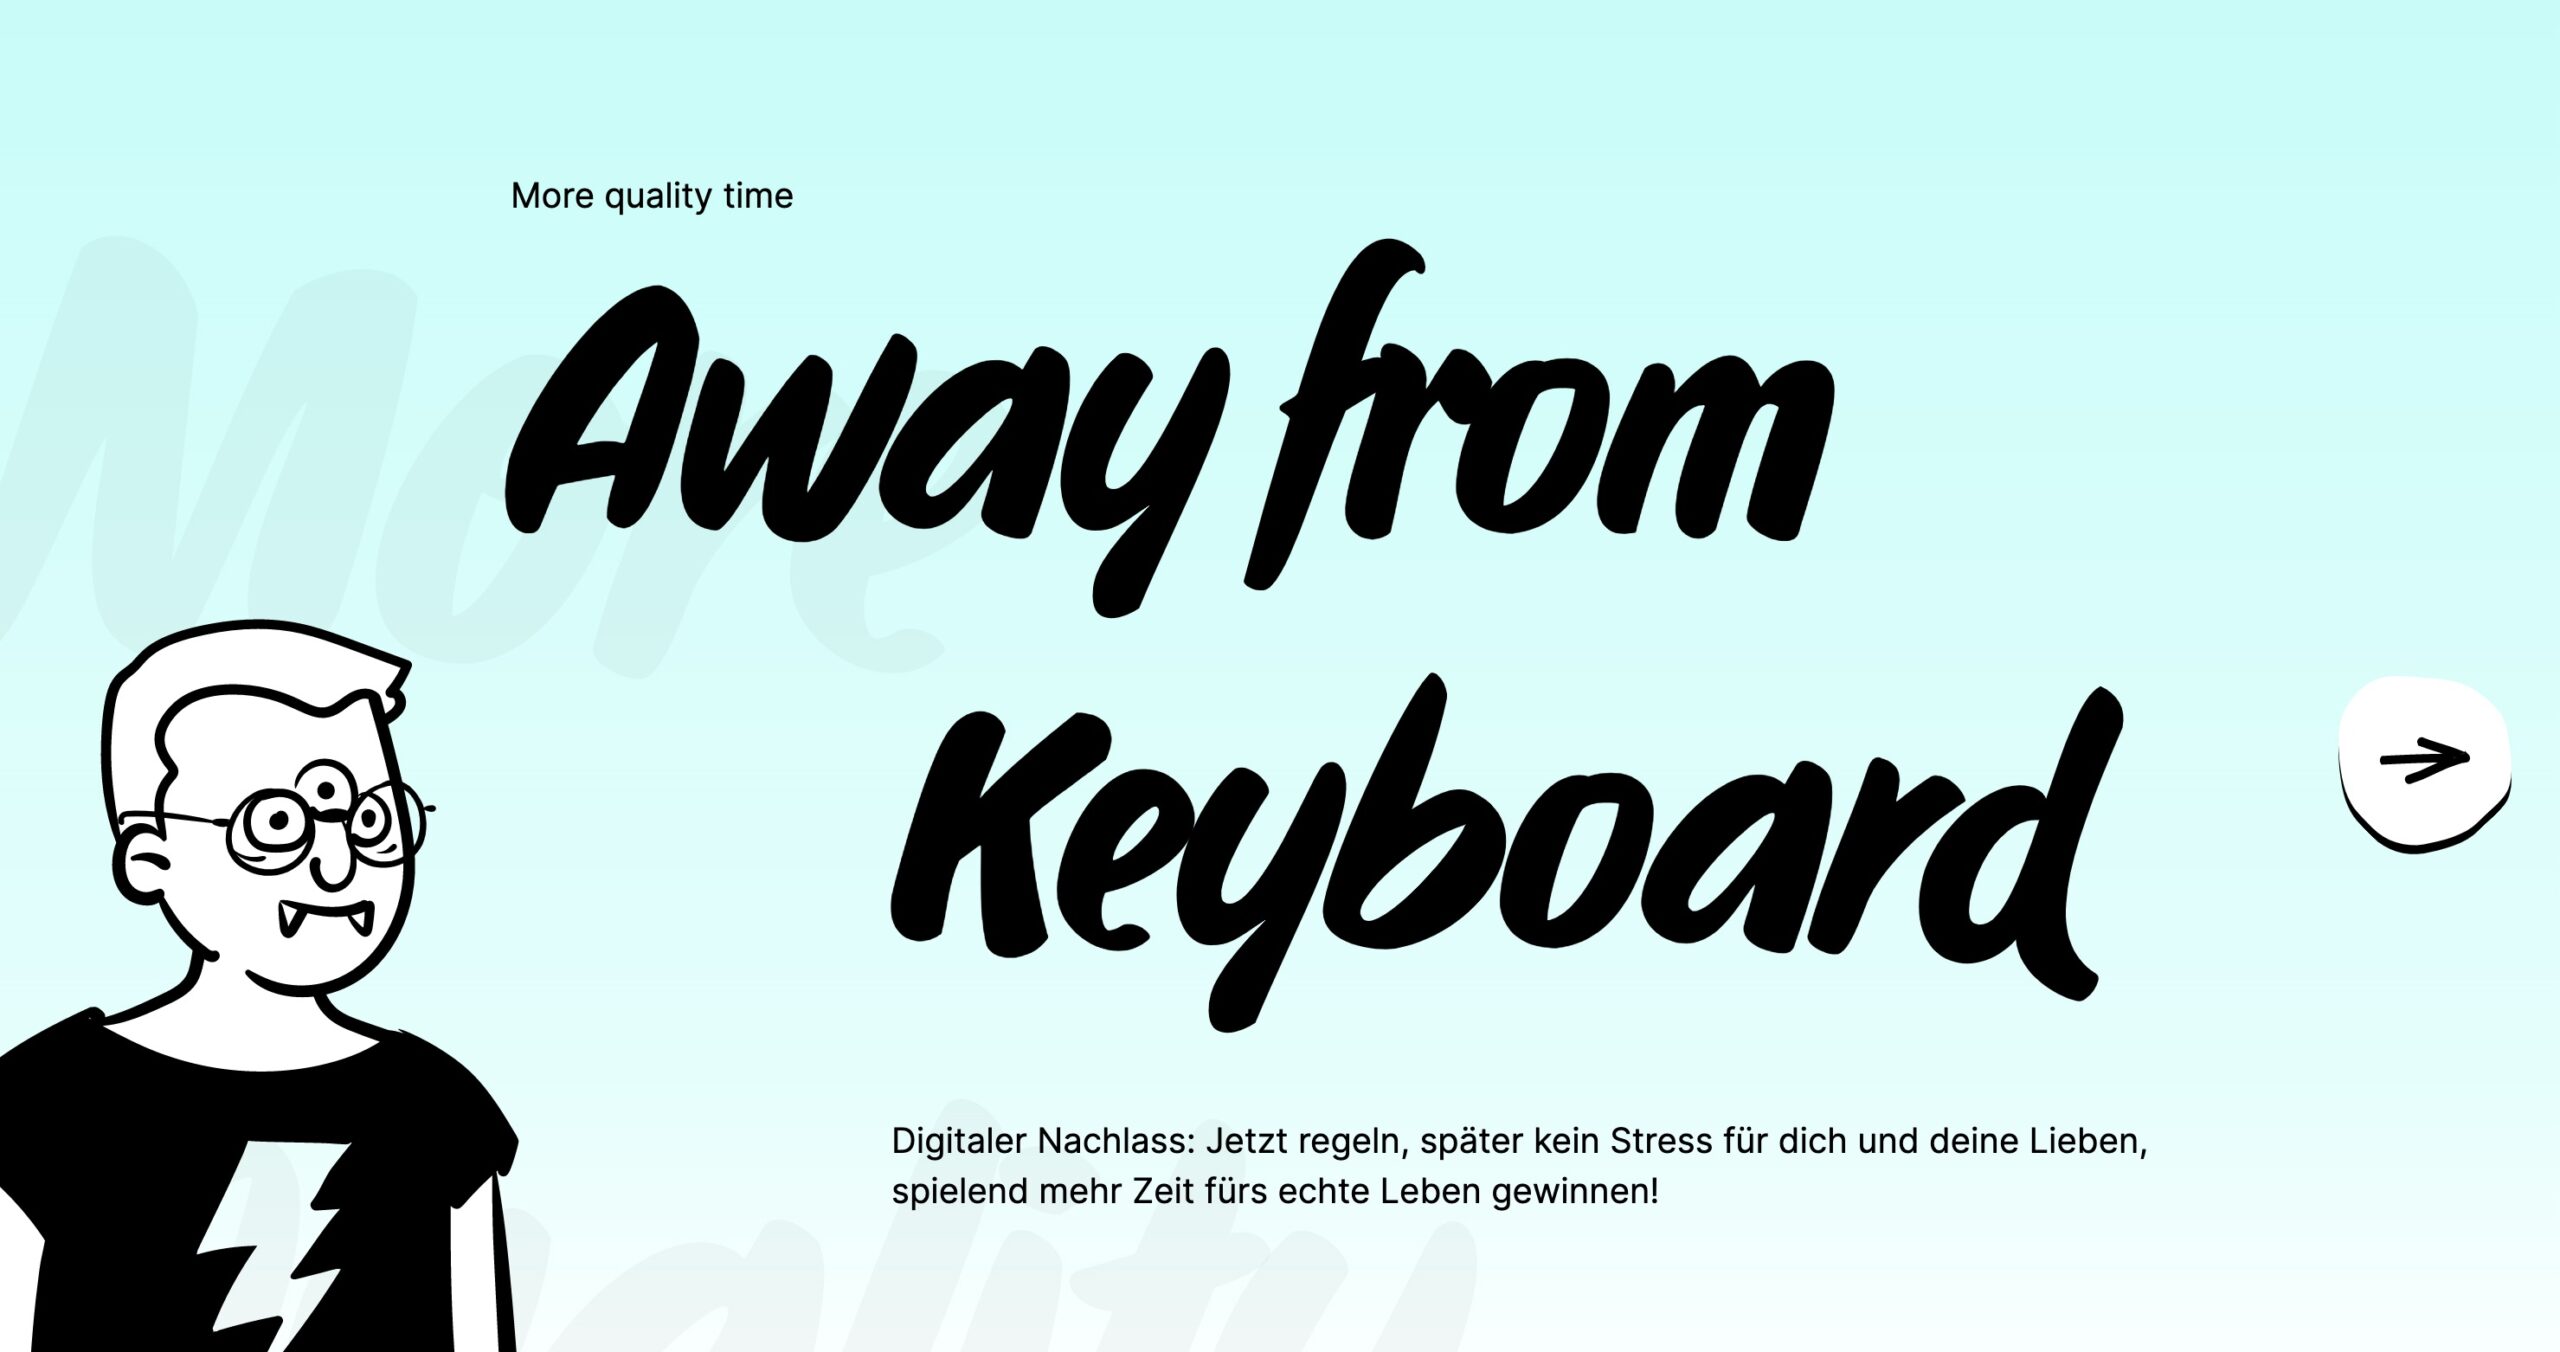 Web-Projekt „Away from keyboard“: Heute informiert, morgen sorgenfrei?